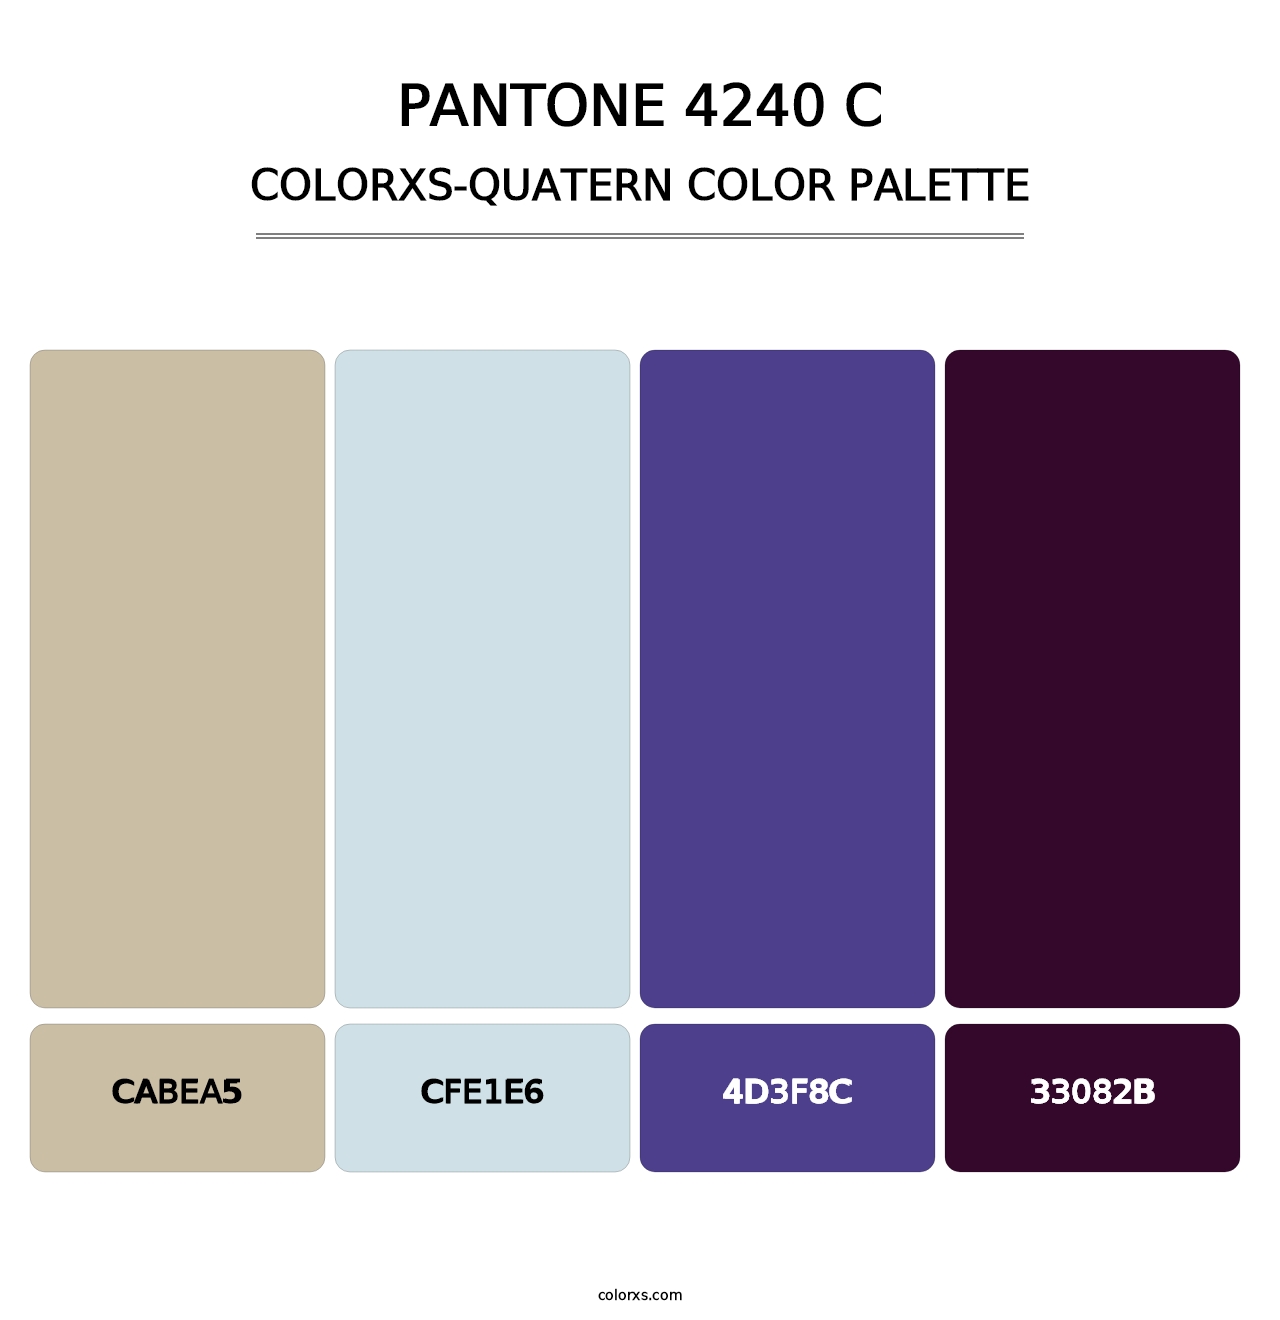 PANTONE 4240 C - Colorxs Quatern Palette